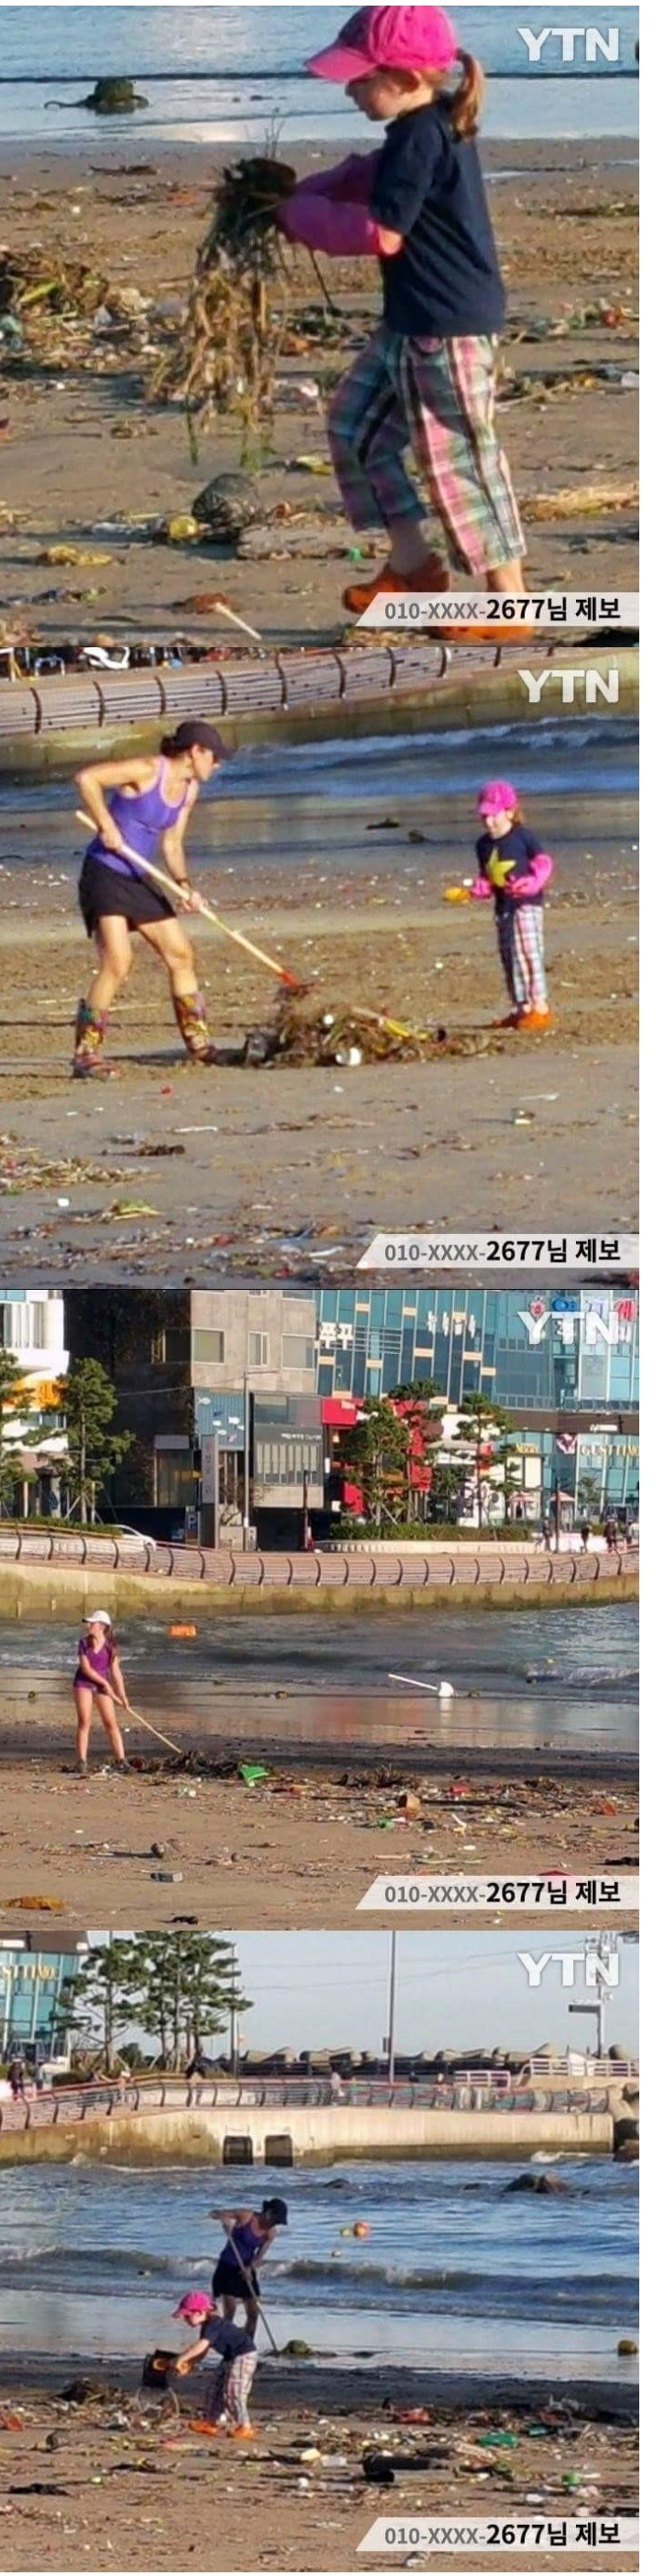 태풍이 지난간 해변가 청소하는 외국인